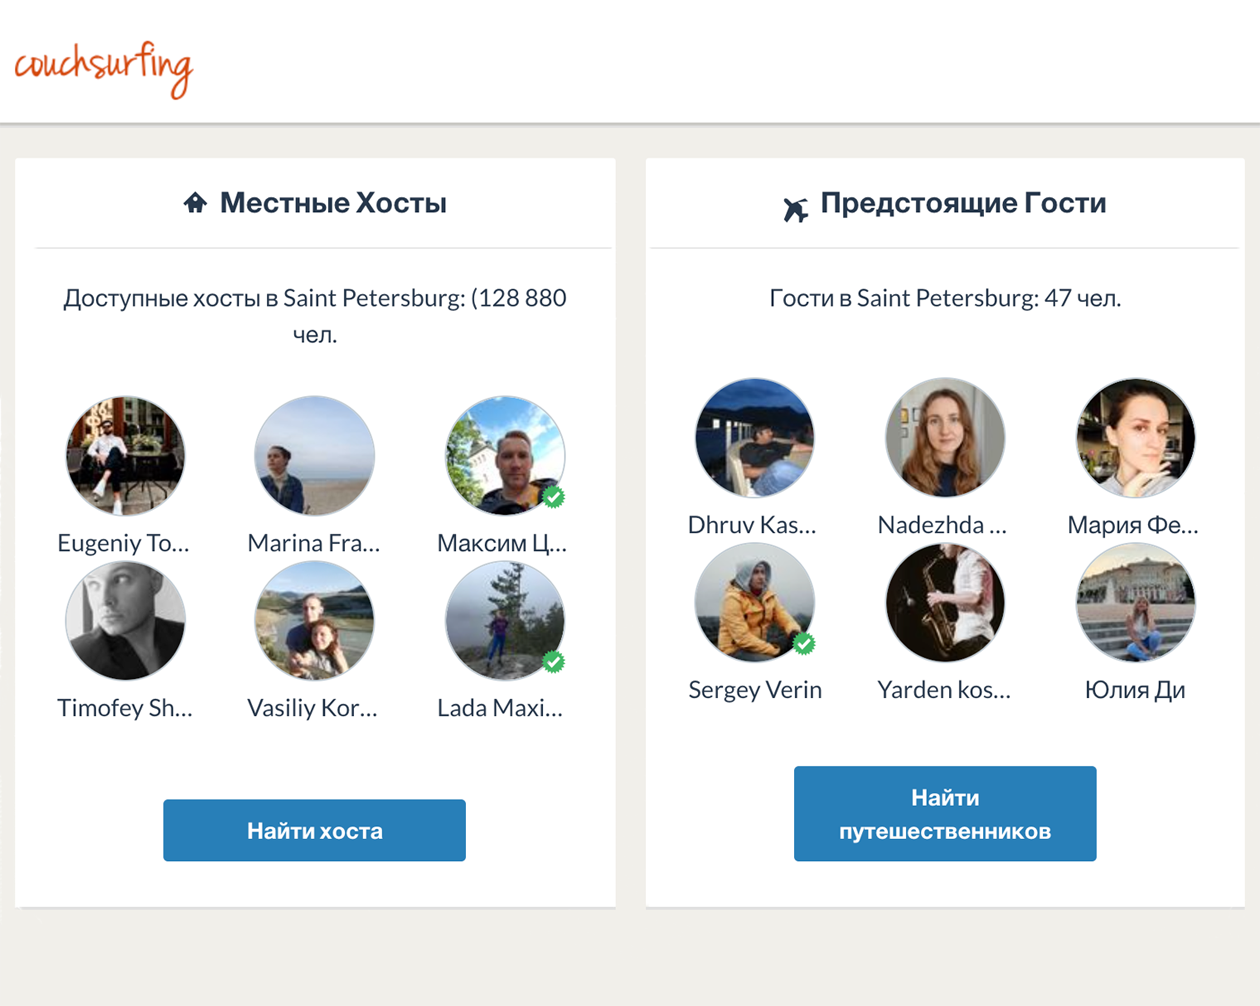 На платформе «Каучсерфинг» путешественников в Петербурге готовы принять почти 130 тысяч человек. Источник: couchsurfing.com